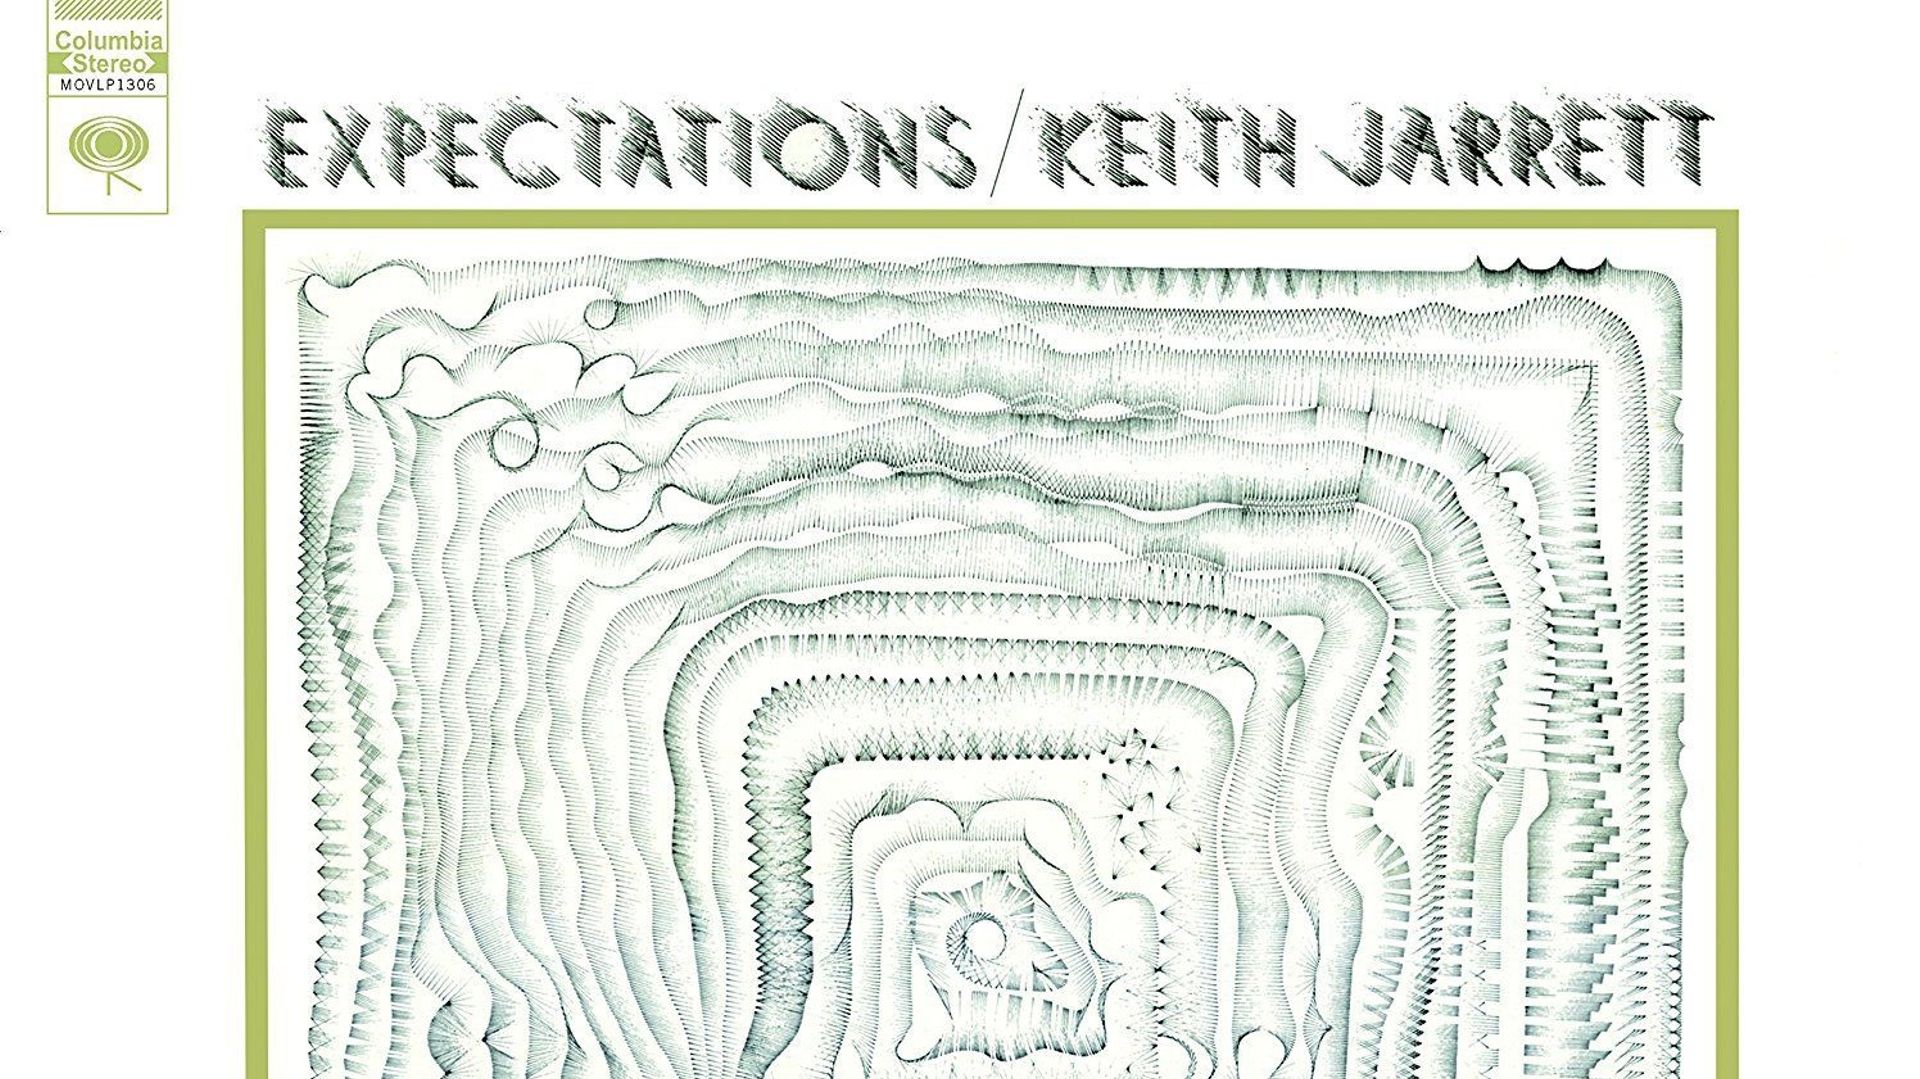 Il y a 50 ans s'enregistrait l'album "Expectations" de Keith Jarrett